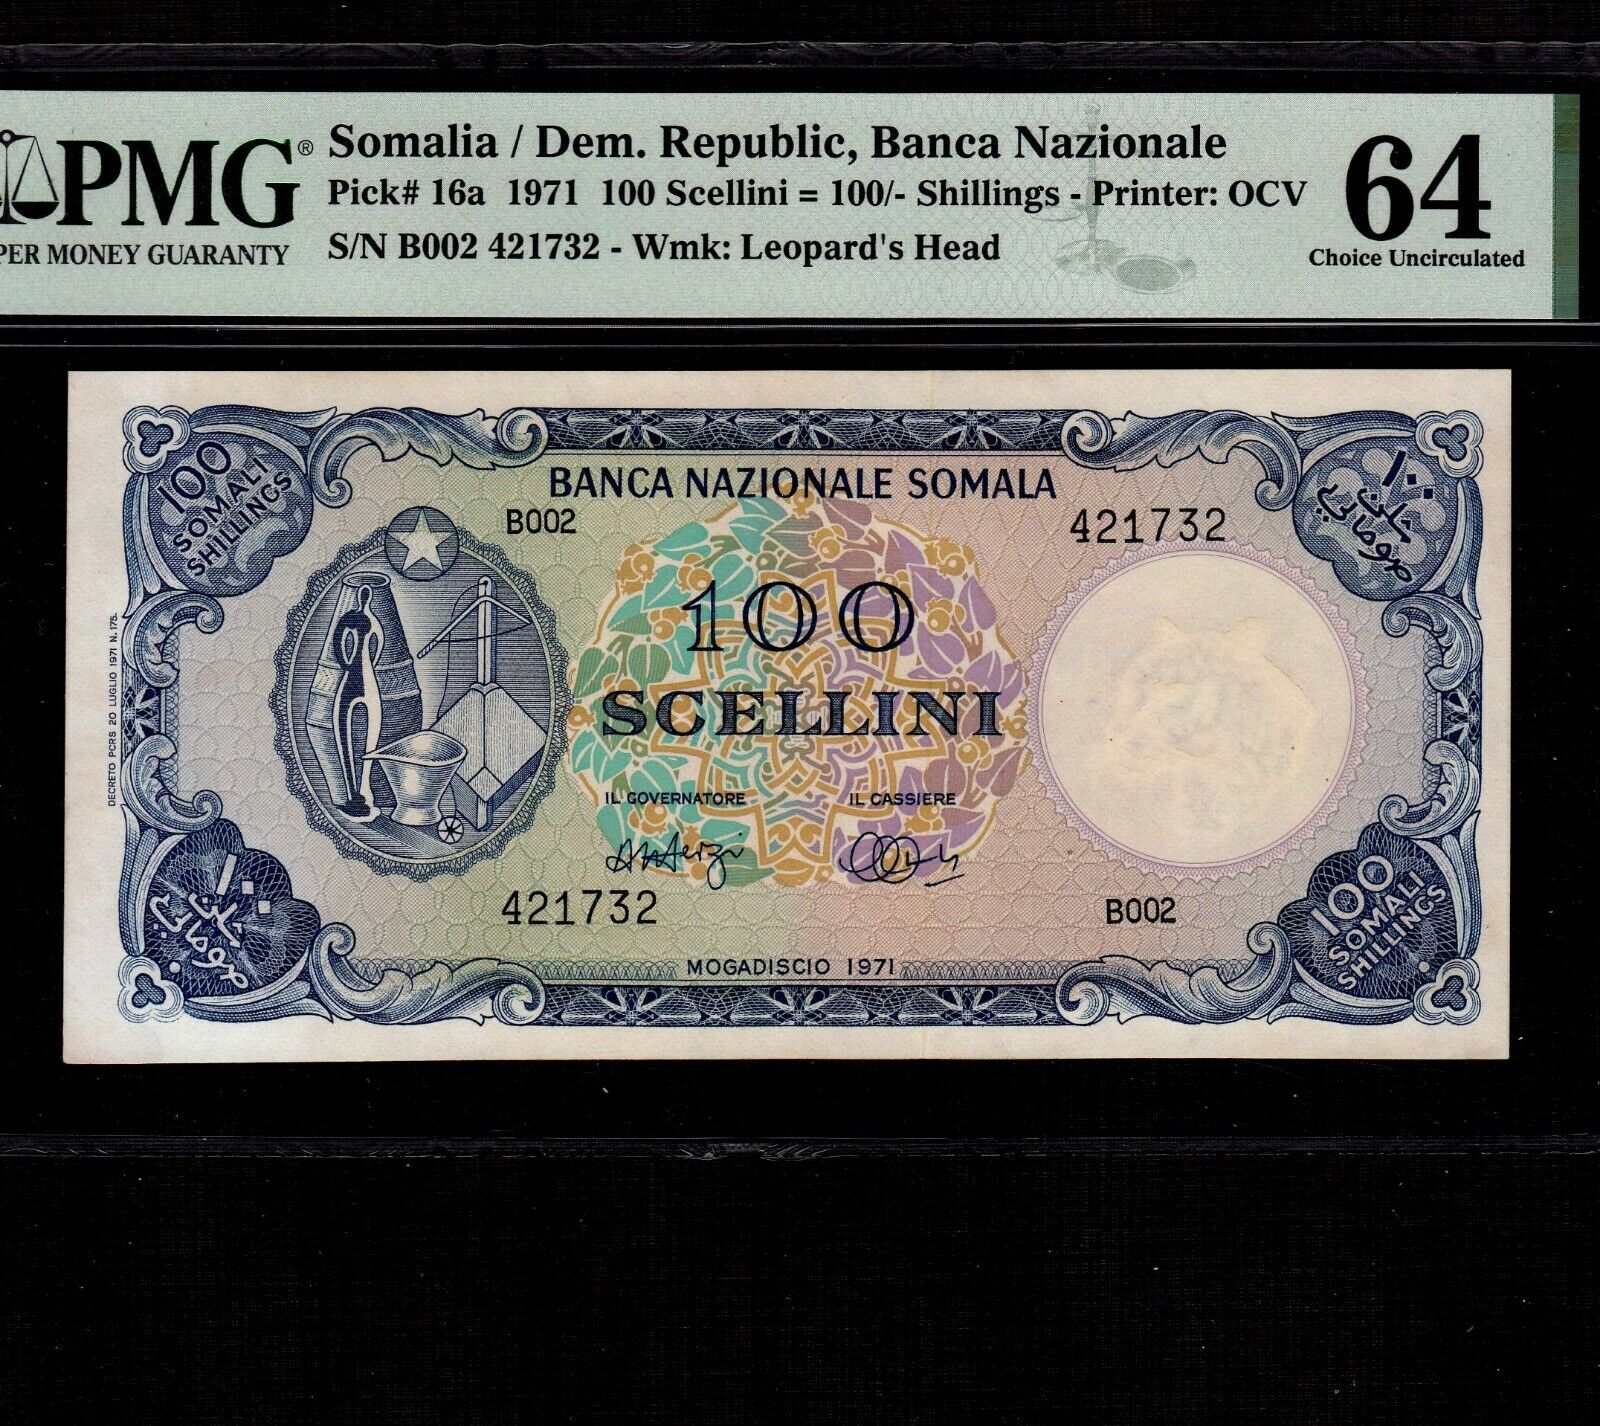 Somalia 100 Scellini = 100 Shillings 1971 P-16a * Pmg Unc 64 * High Grade *